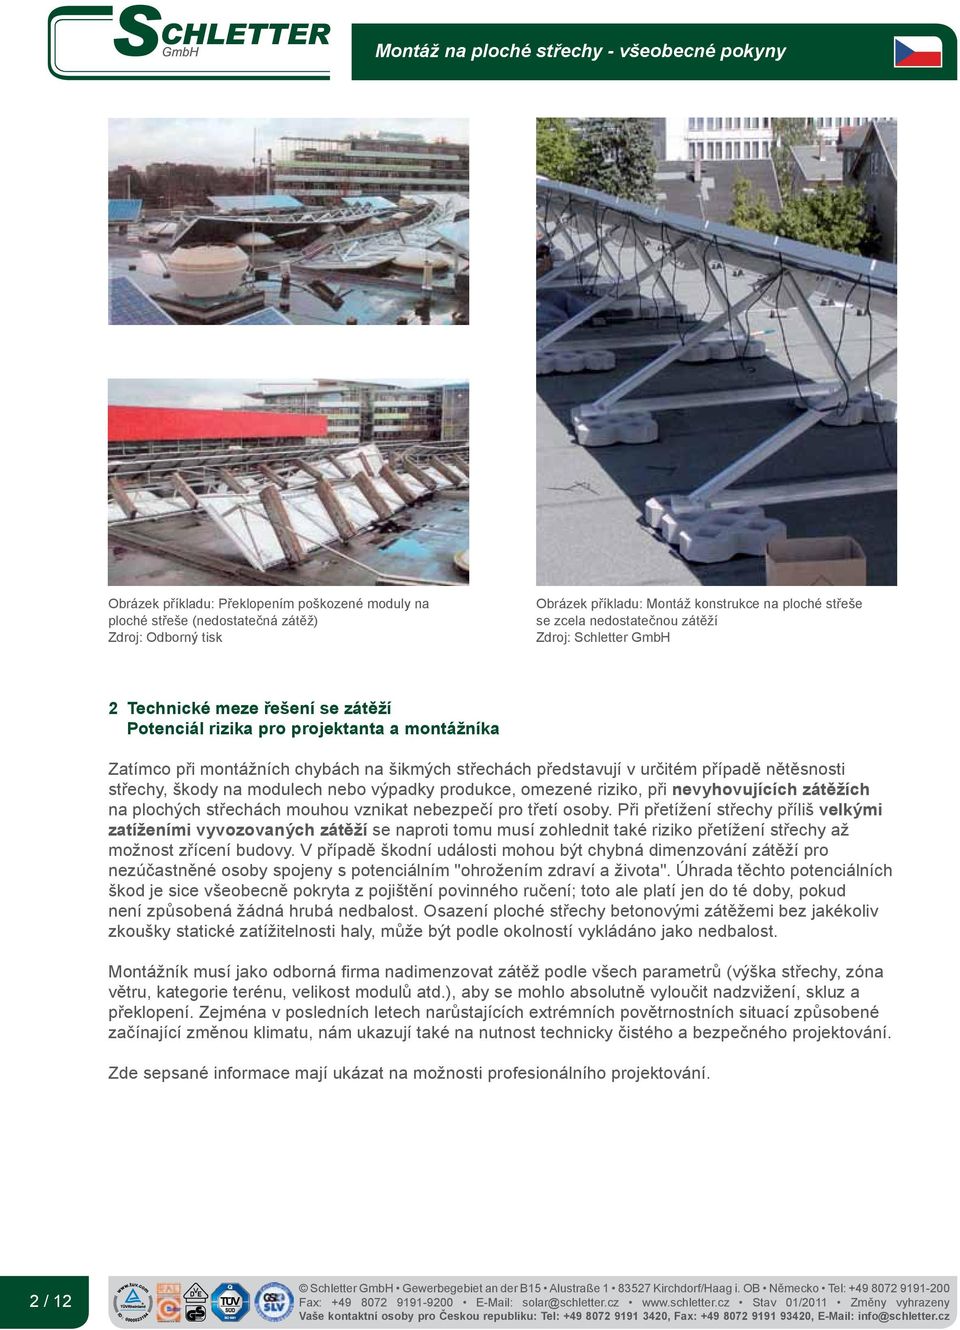 škody na modulech nebo výpadky produkce, omezené riziko, při nevyhovujících zátěžích na plochých střechách mouhou vznikat nebezpečí pro třetí osoby.